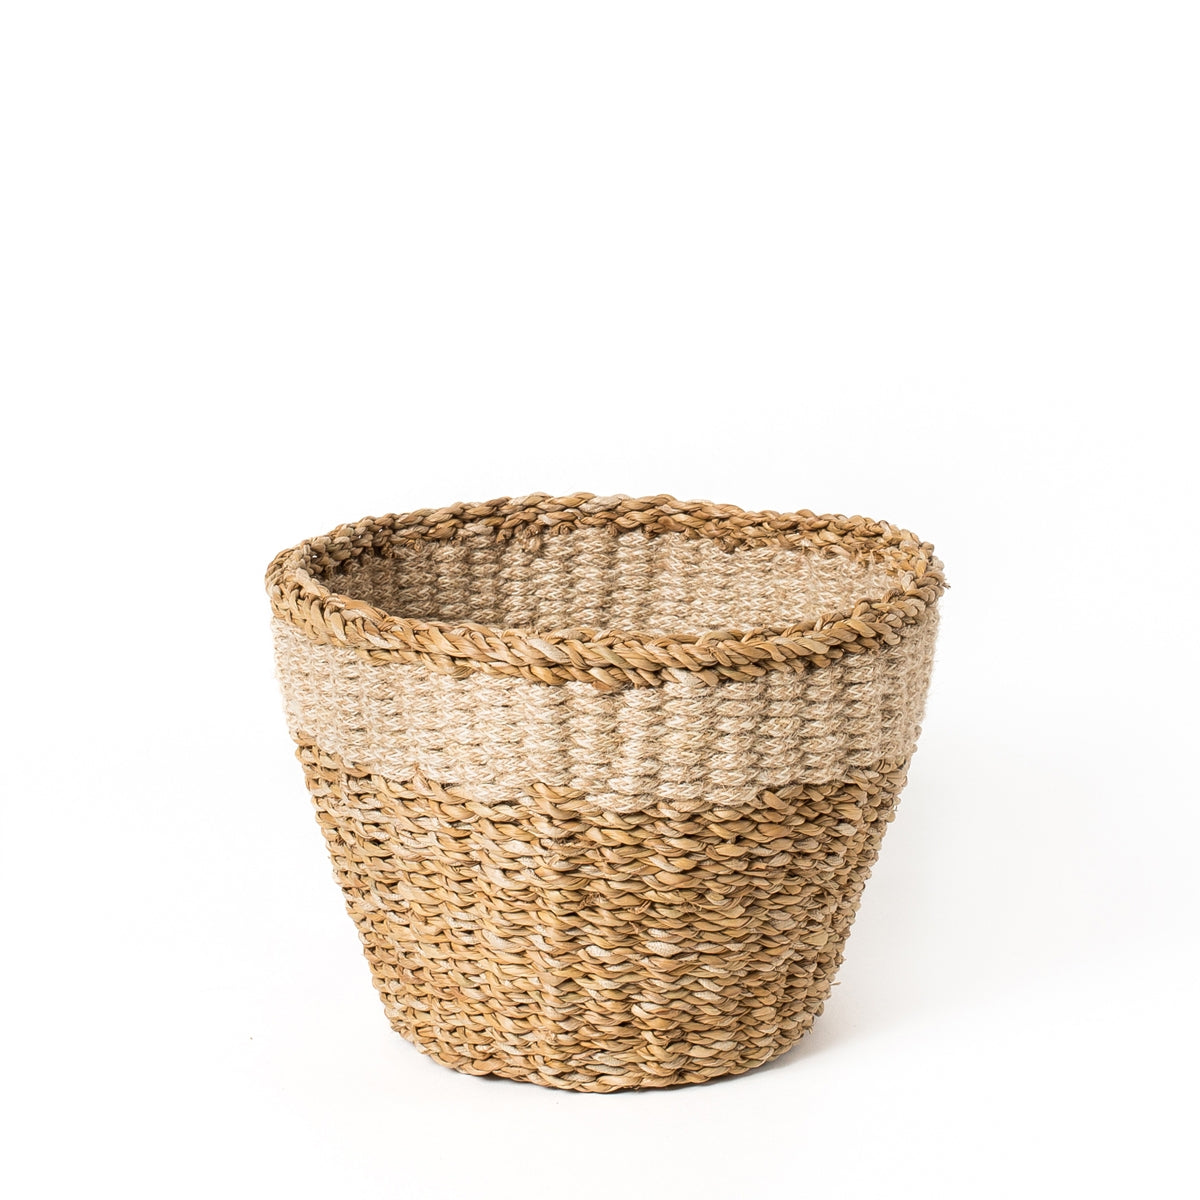 Savar Basket- Medium